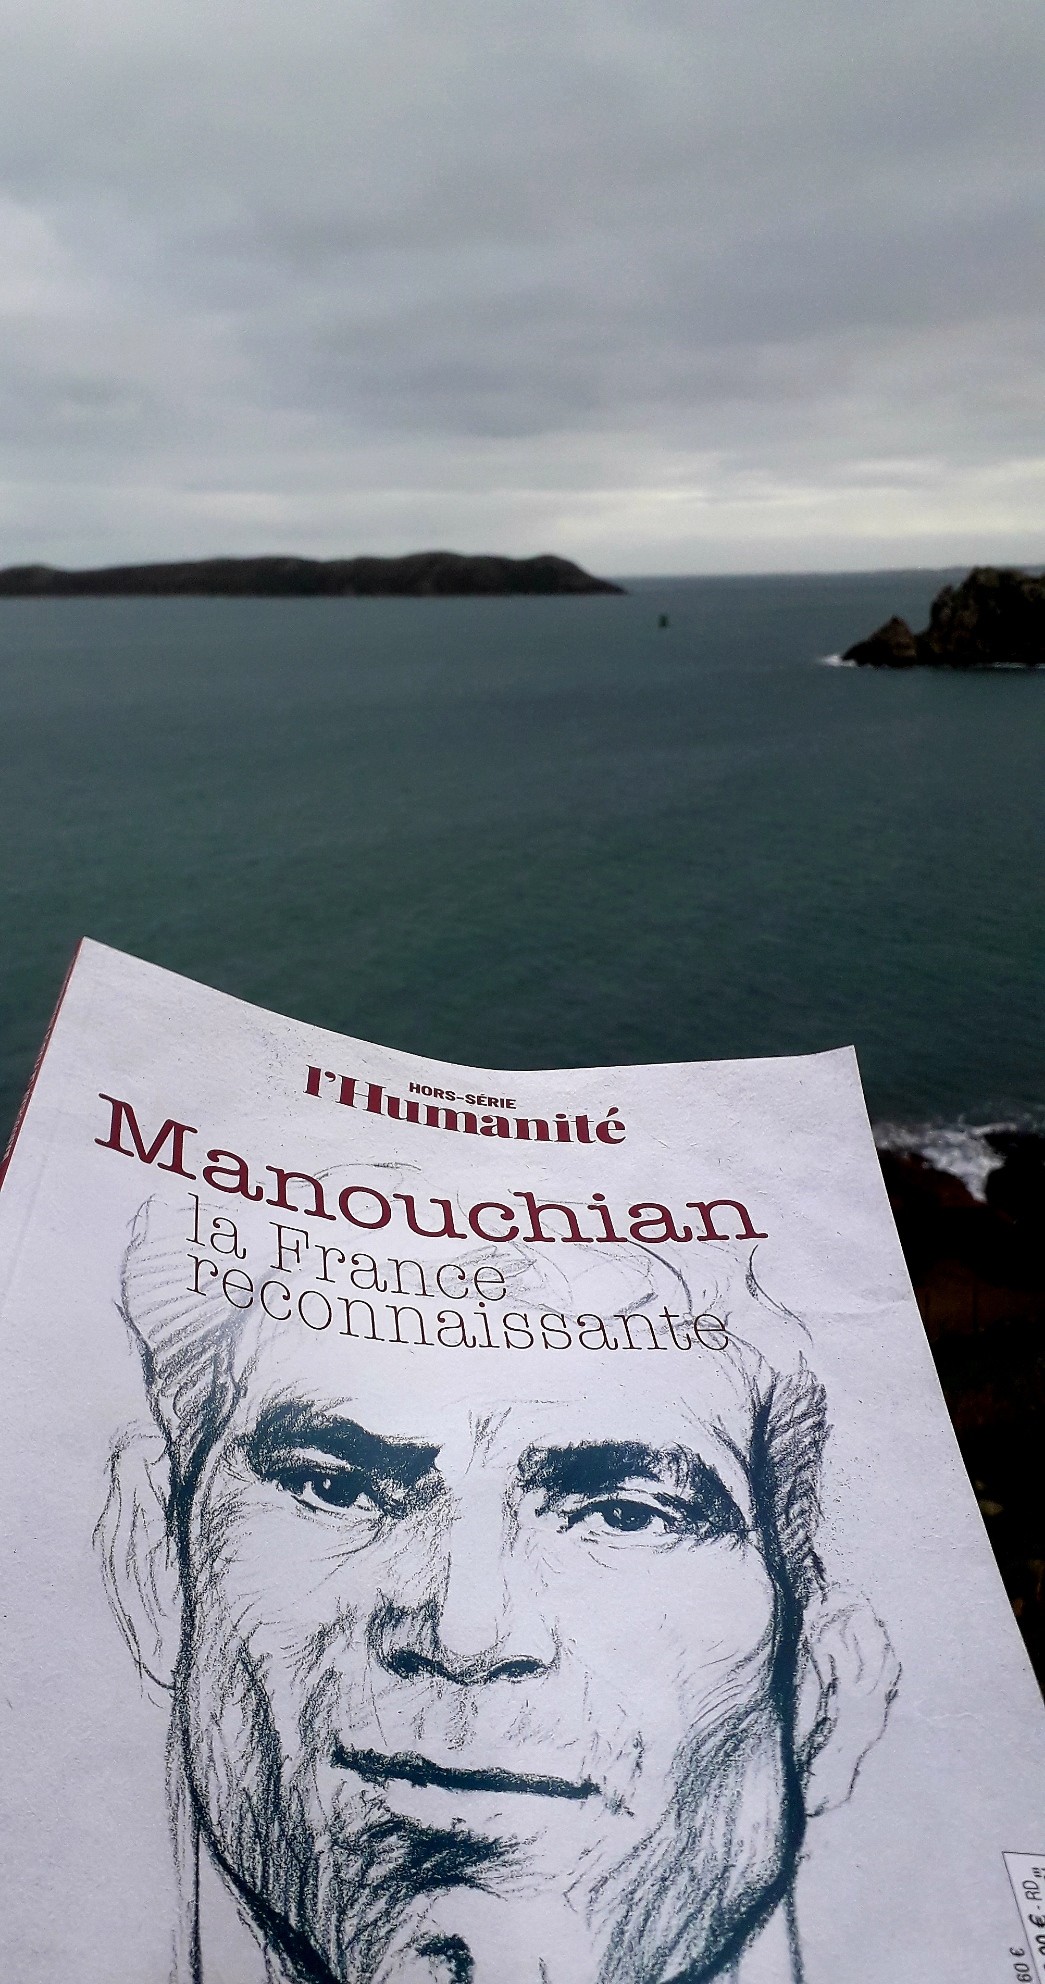 Hors-série de l'Humanité :
Manouchian-la France reconnaissante. 
Photo prise au bord de la mer en Bretagne Nord.